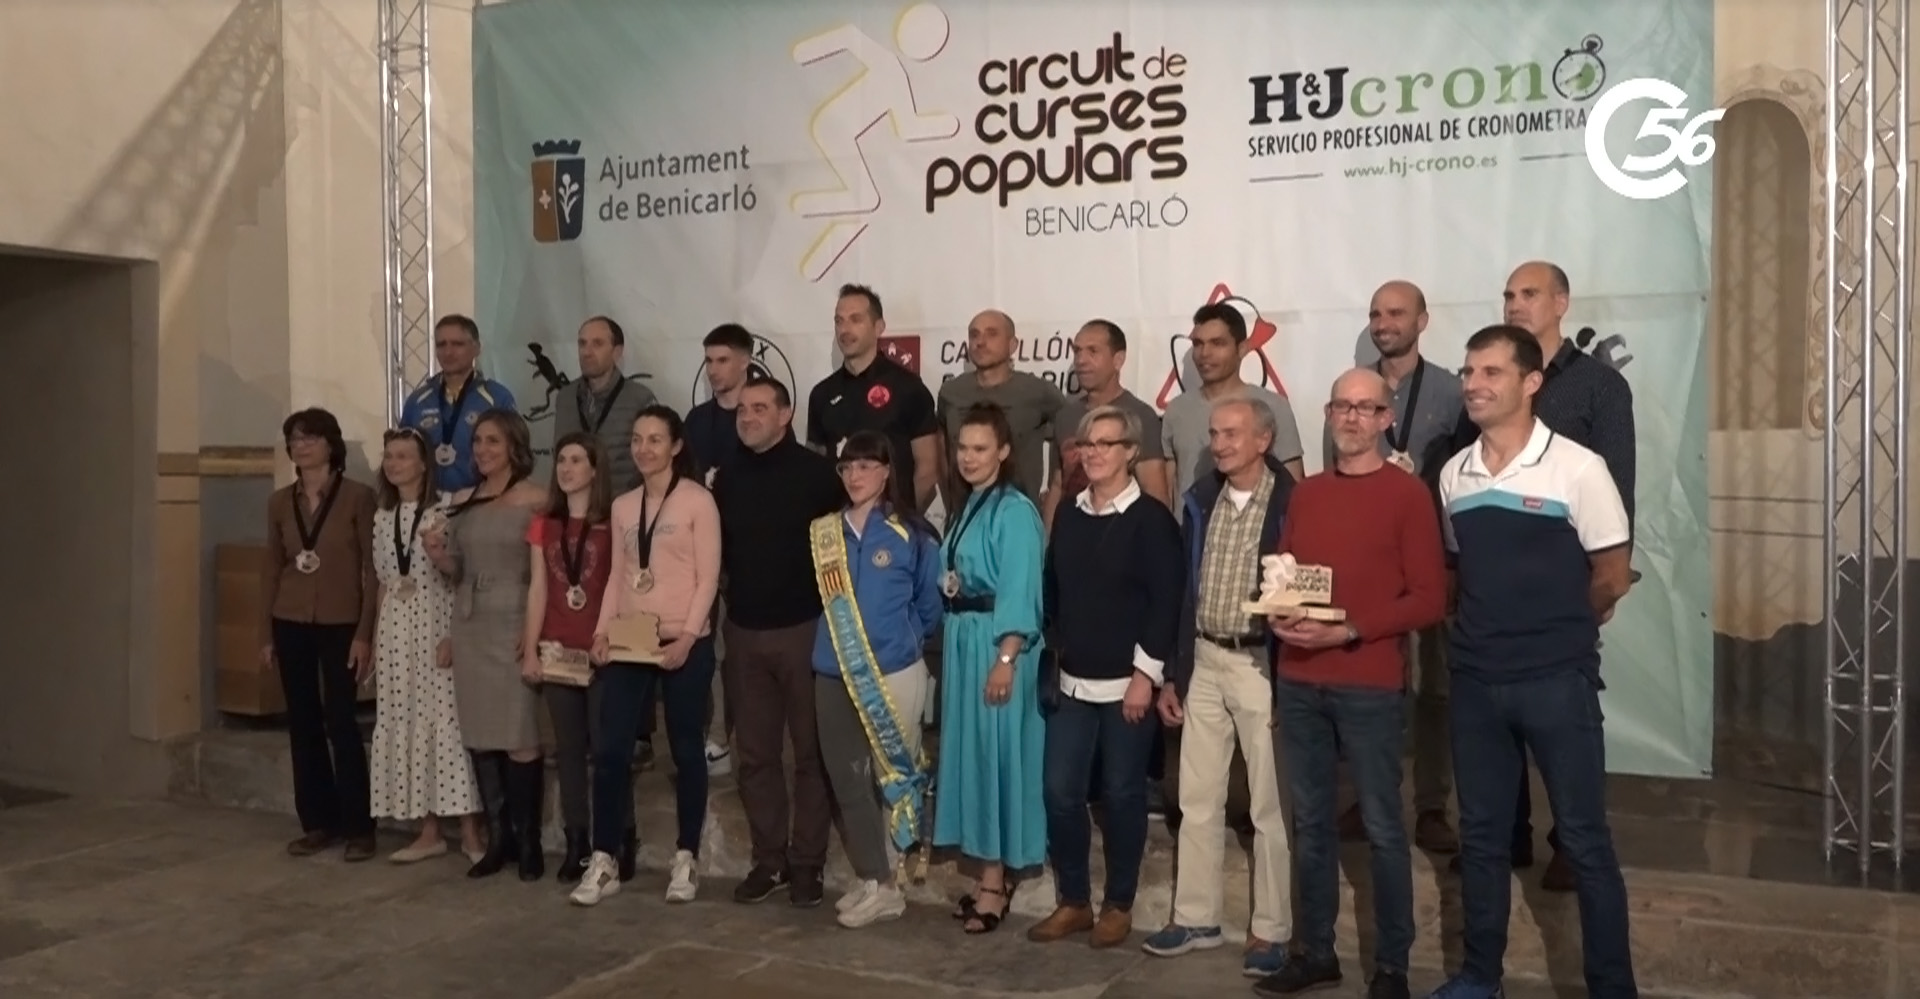 S'entreguen els premis del VI Circuit de Curses Populars de Benicarló